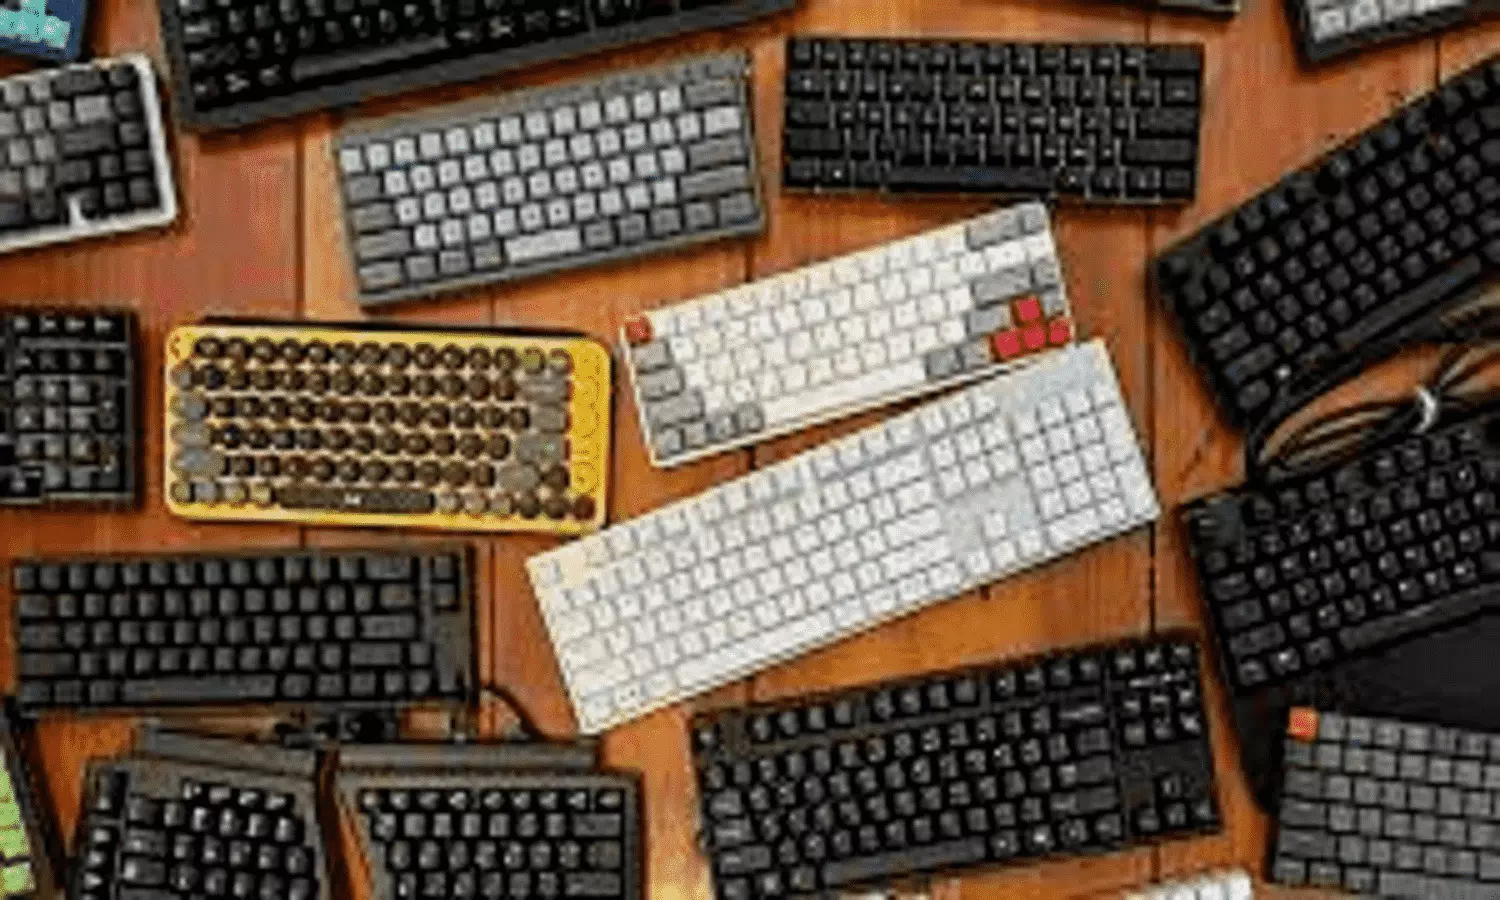 Best Keyboards